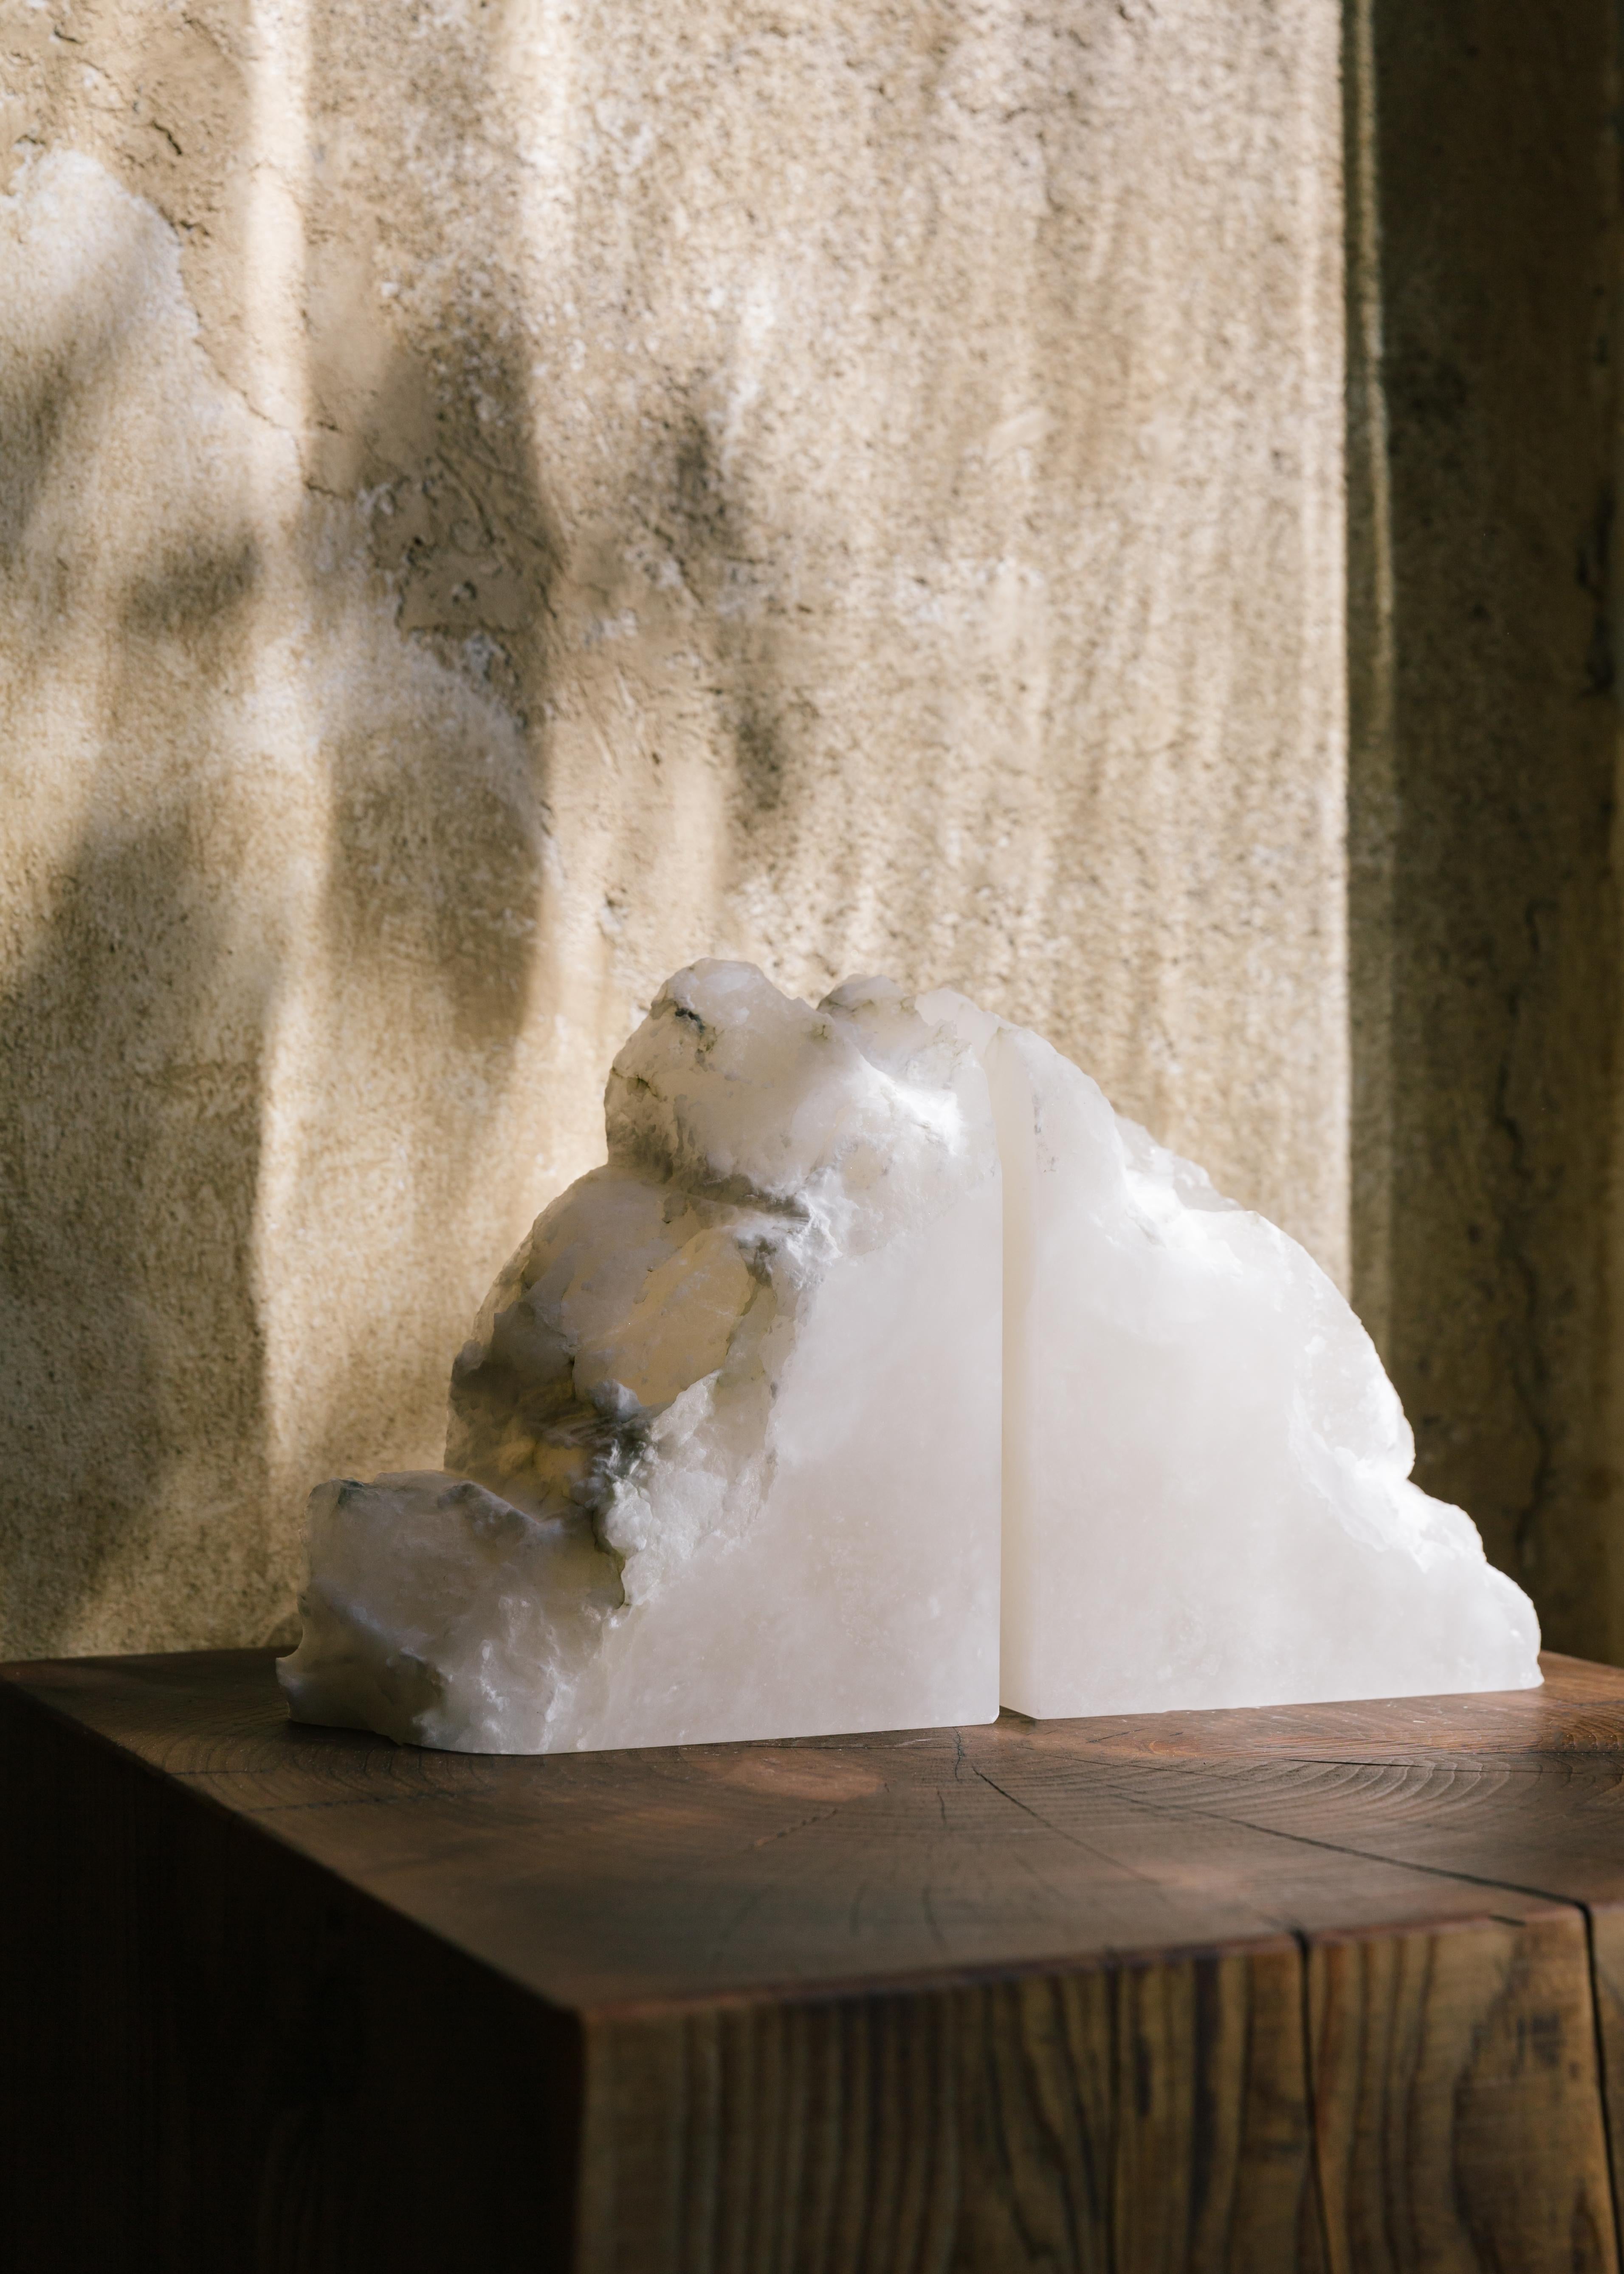 Ensemble de 2 serre-livres Cel par Karu
Dimensions : D 6 x L 8 x H 15 cm
Matériaux : albâtre.

Vases contemporains inspirés de l'Antiquité étrusque.
Fabriqué à la main dans les collines de Toscane.

La société de design primée Karu présente sa